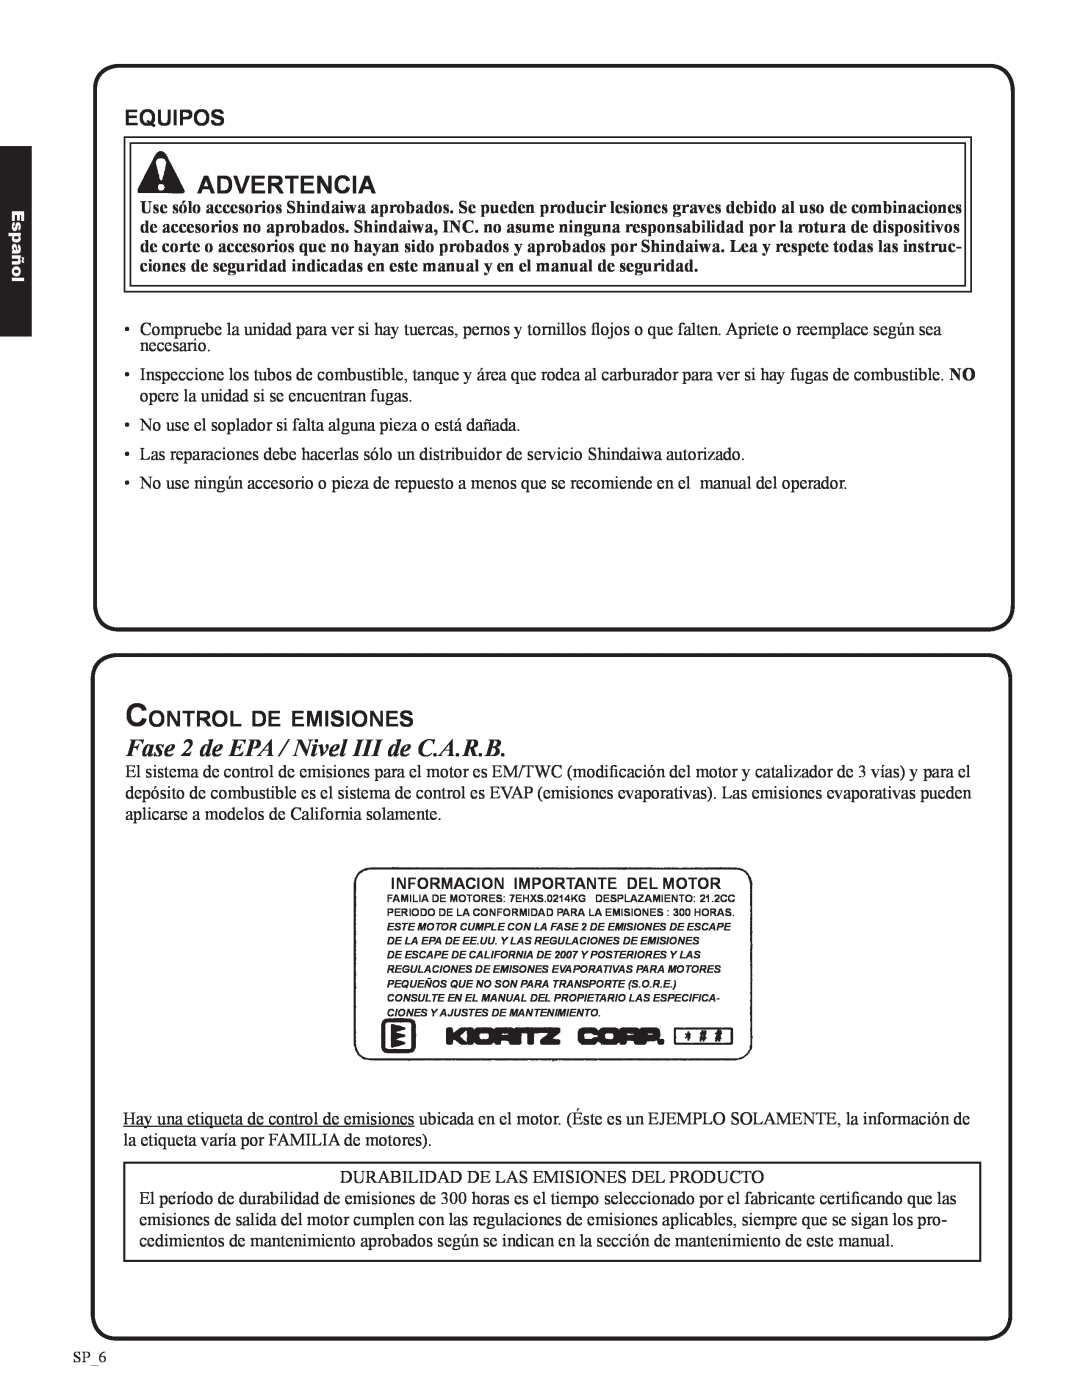 Shindaiwa EB633RT, 82050 manual Fase 2 de EPA / Nivel III de C.A.R.B, equipos, Control de emisiones, Advertencia, Español 